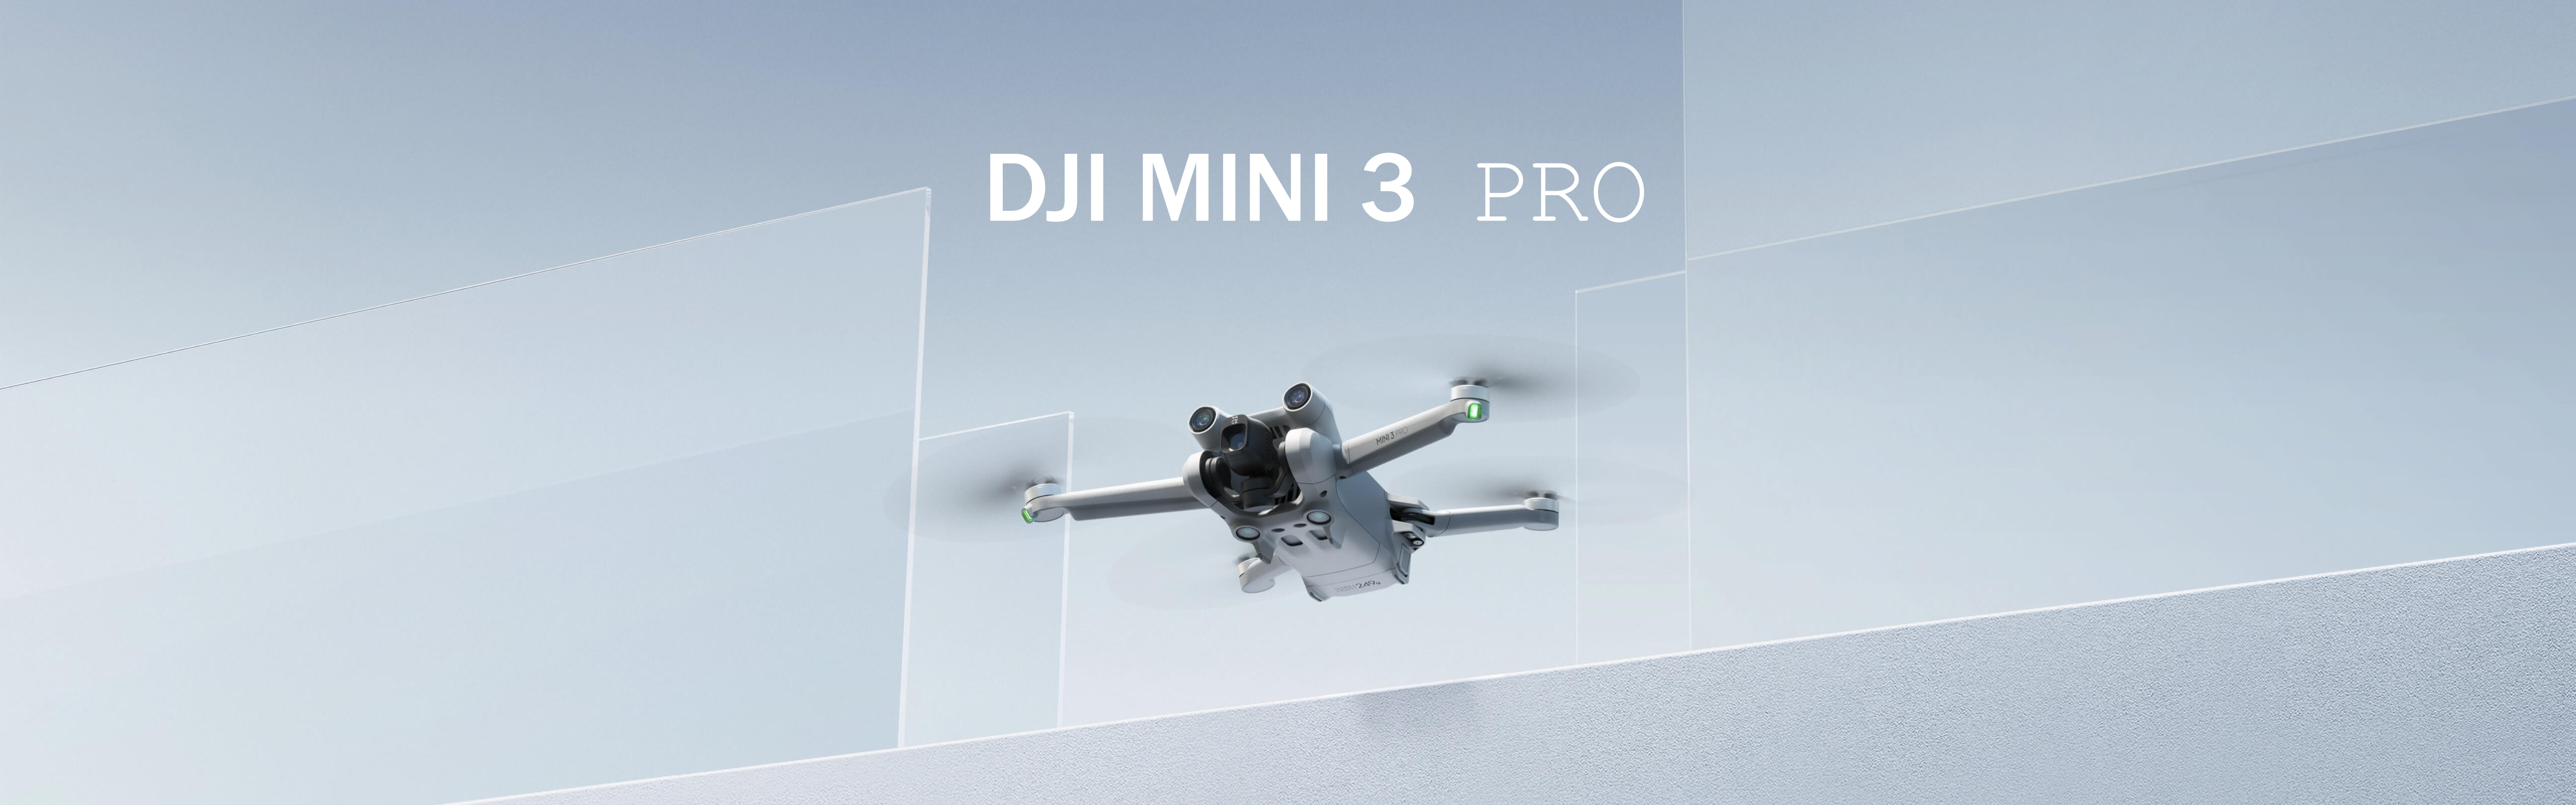 DJI MINI 3 Pro